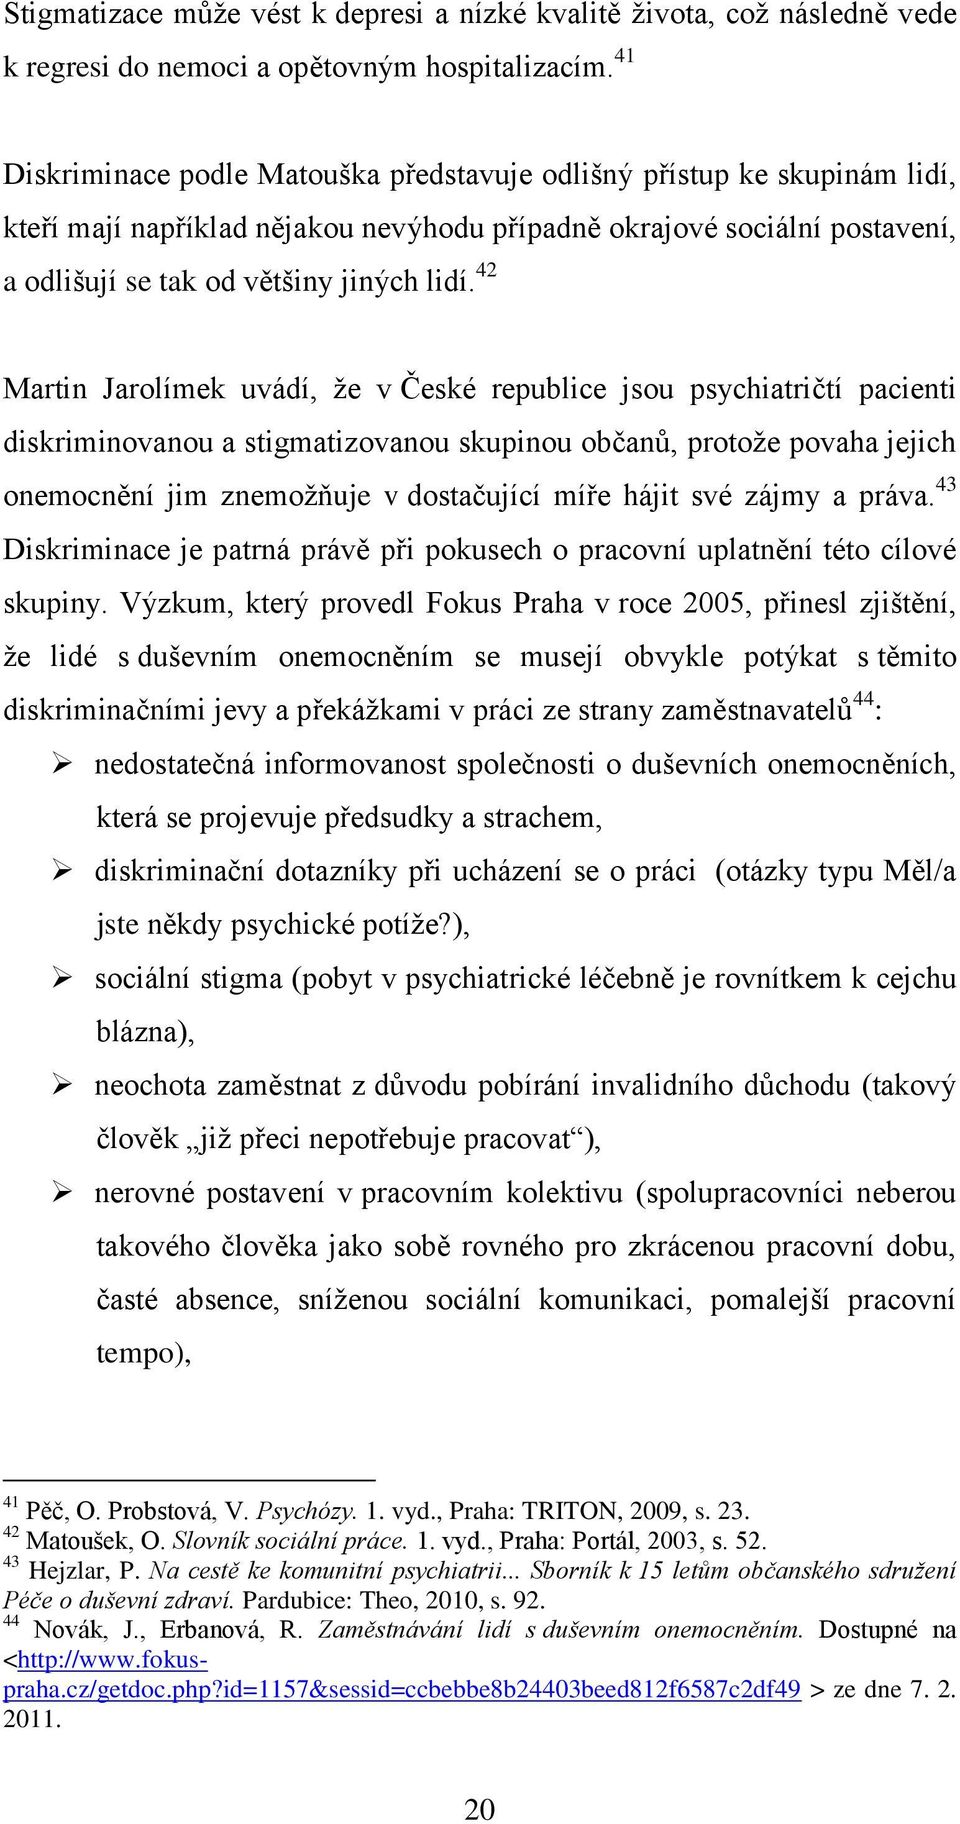 42 Martin Jarolímek uvádí, ţe v České republice jsou psychiatričtí pacienti diskriminovanou a stigmatizovanou skupinou občanů, protoţe povaha jejich onemocnění jim znemoţňuje v dostačující míře hájit